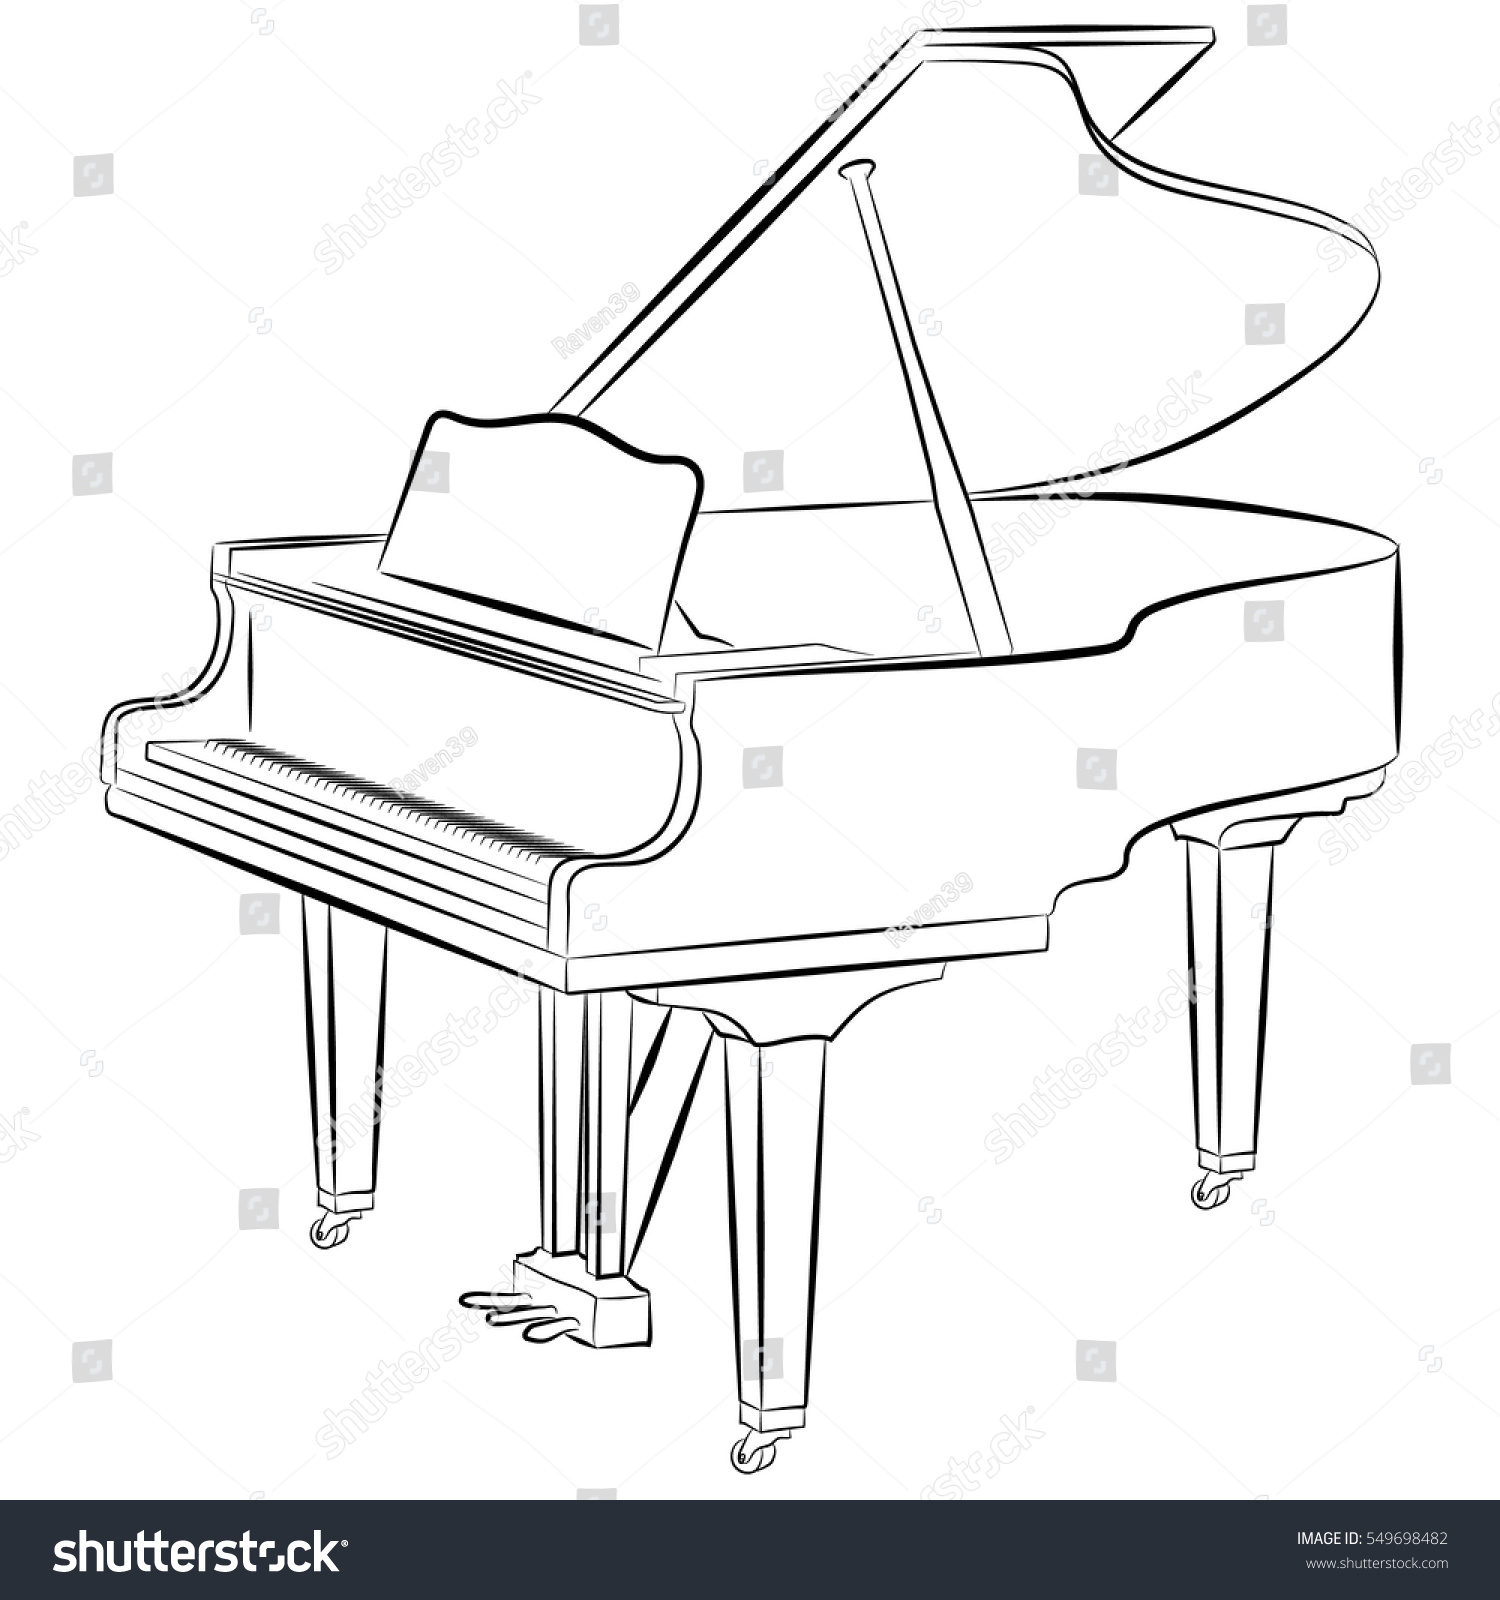 Музыкальный инструмент рояль вид сбоку